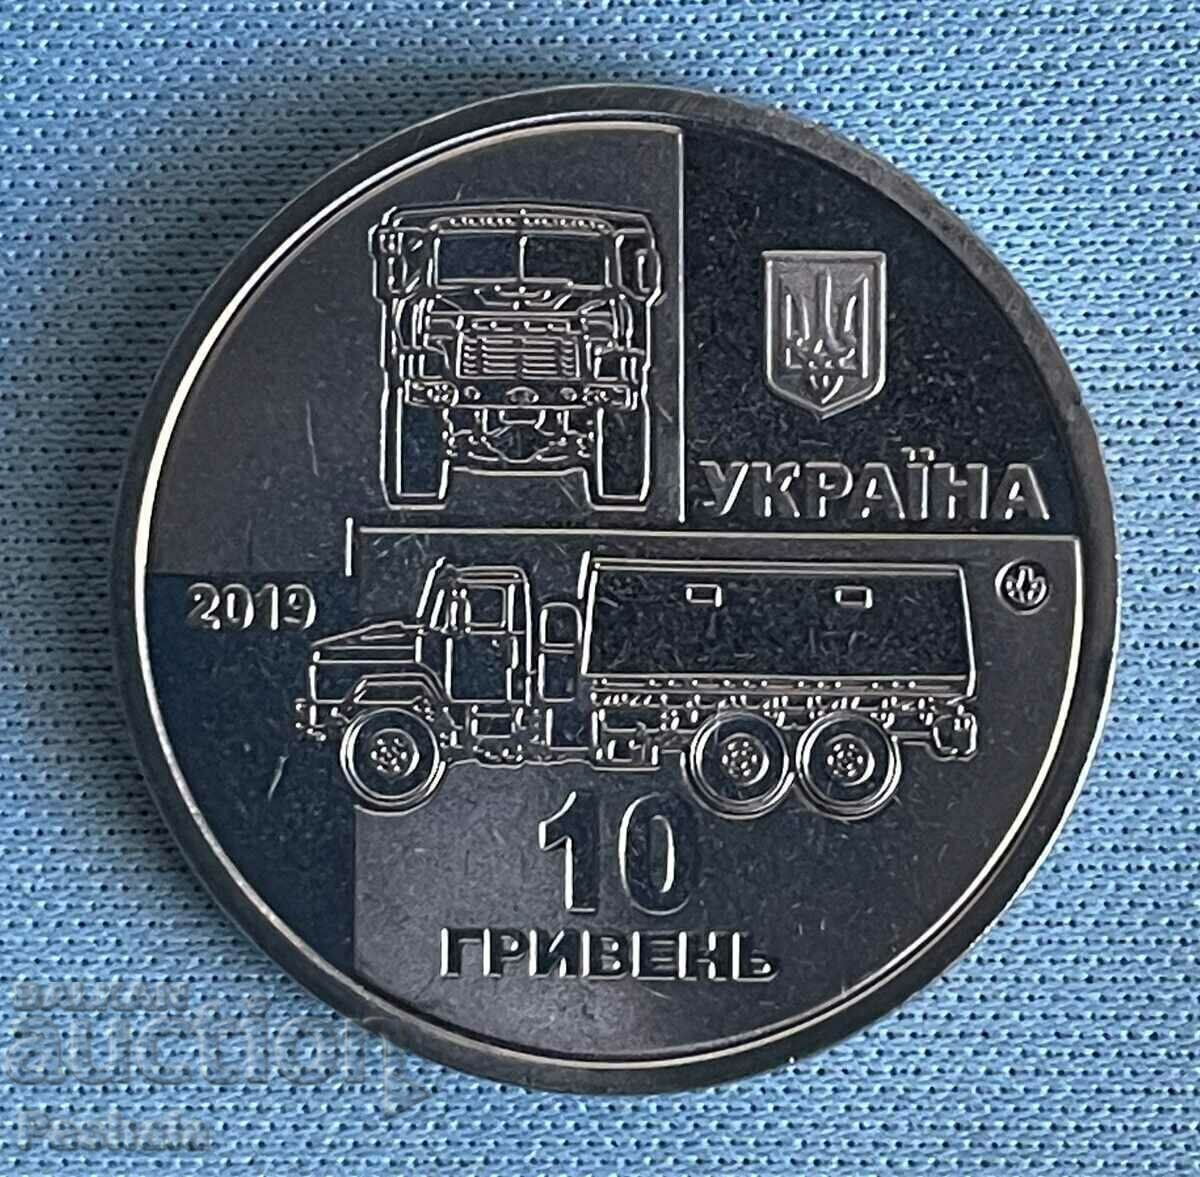 Ουκρανία 10 εθνικού νομίσματος 2019